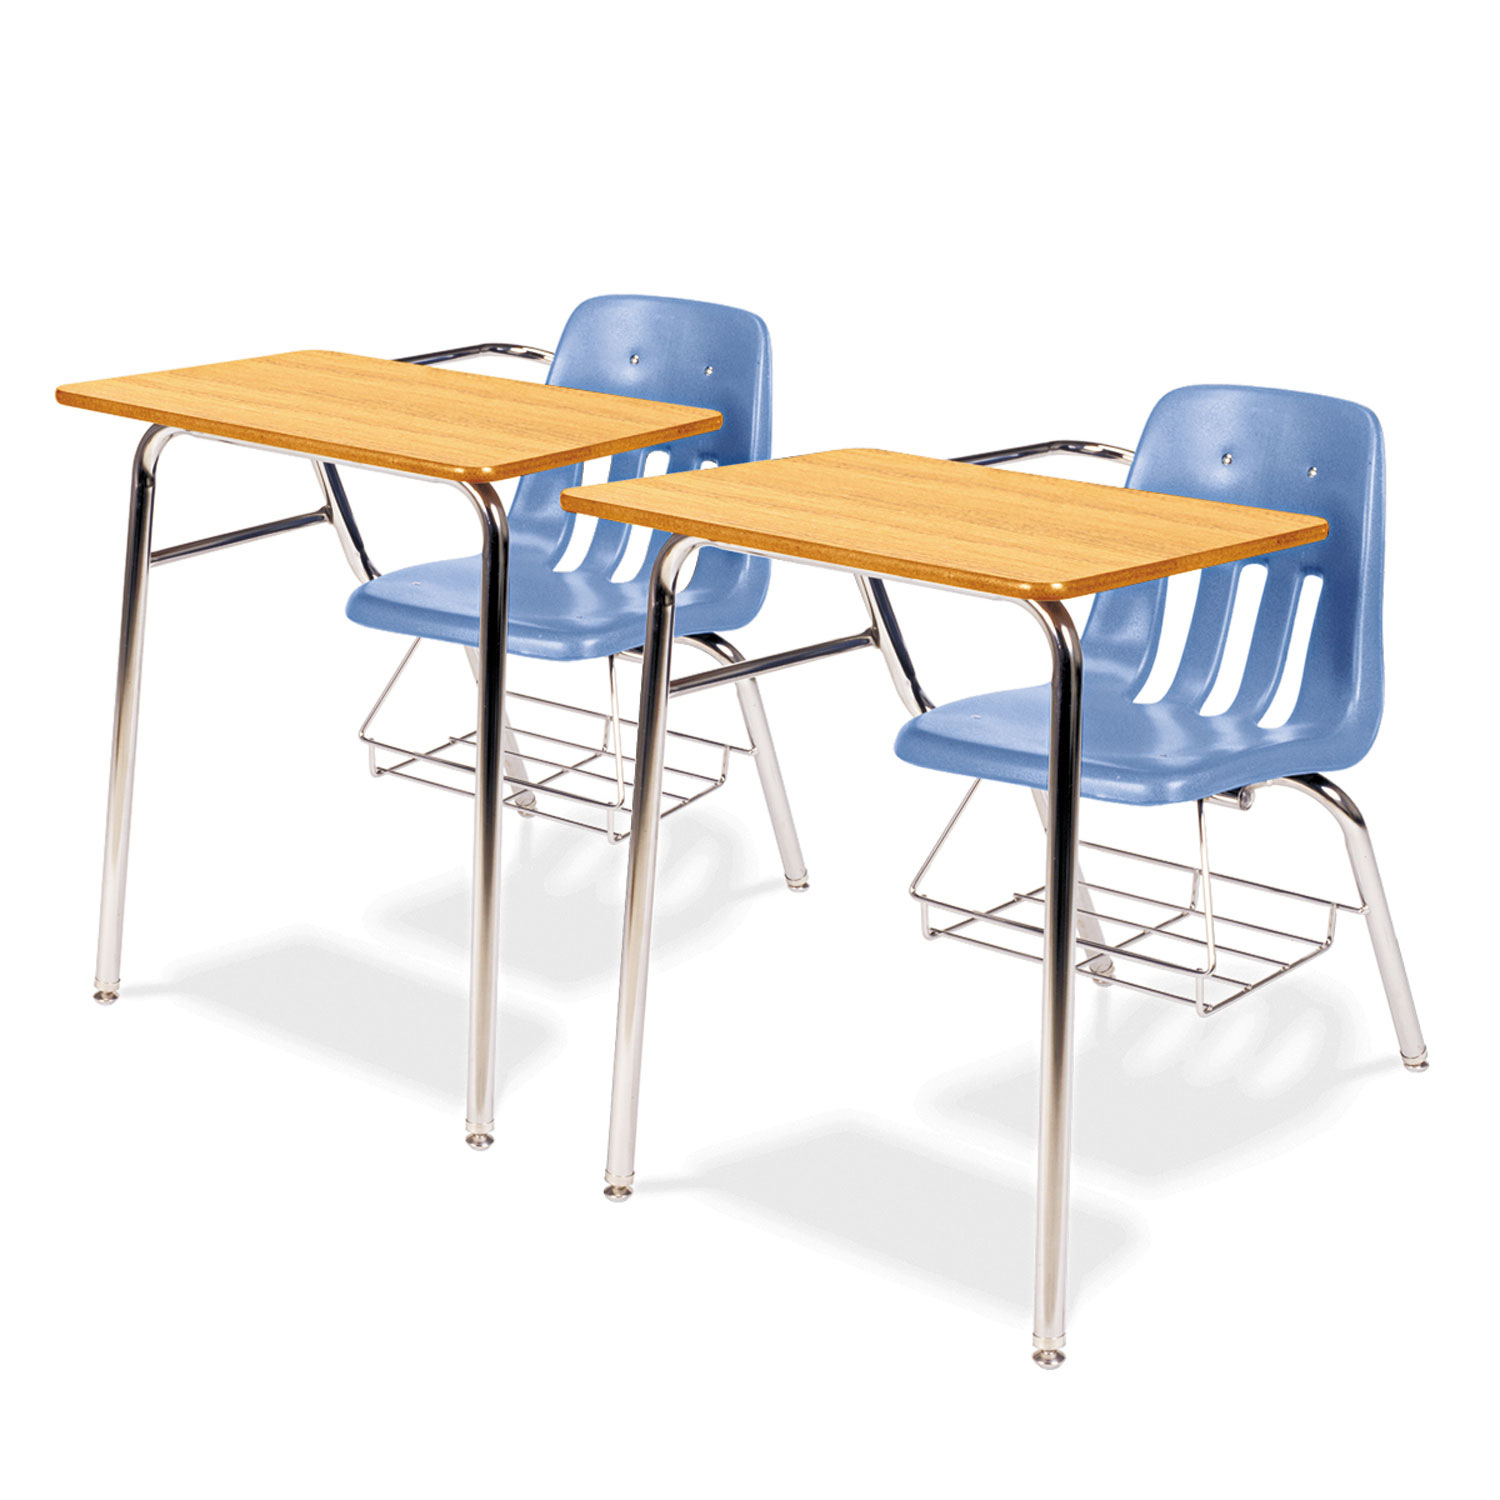 9400 Series Chair Desk, 21w x 33-1/2d x 30h, Medium Oak/Blueberry, 2/Carton